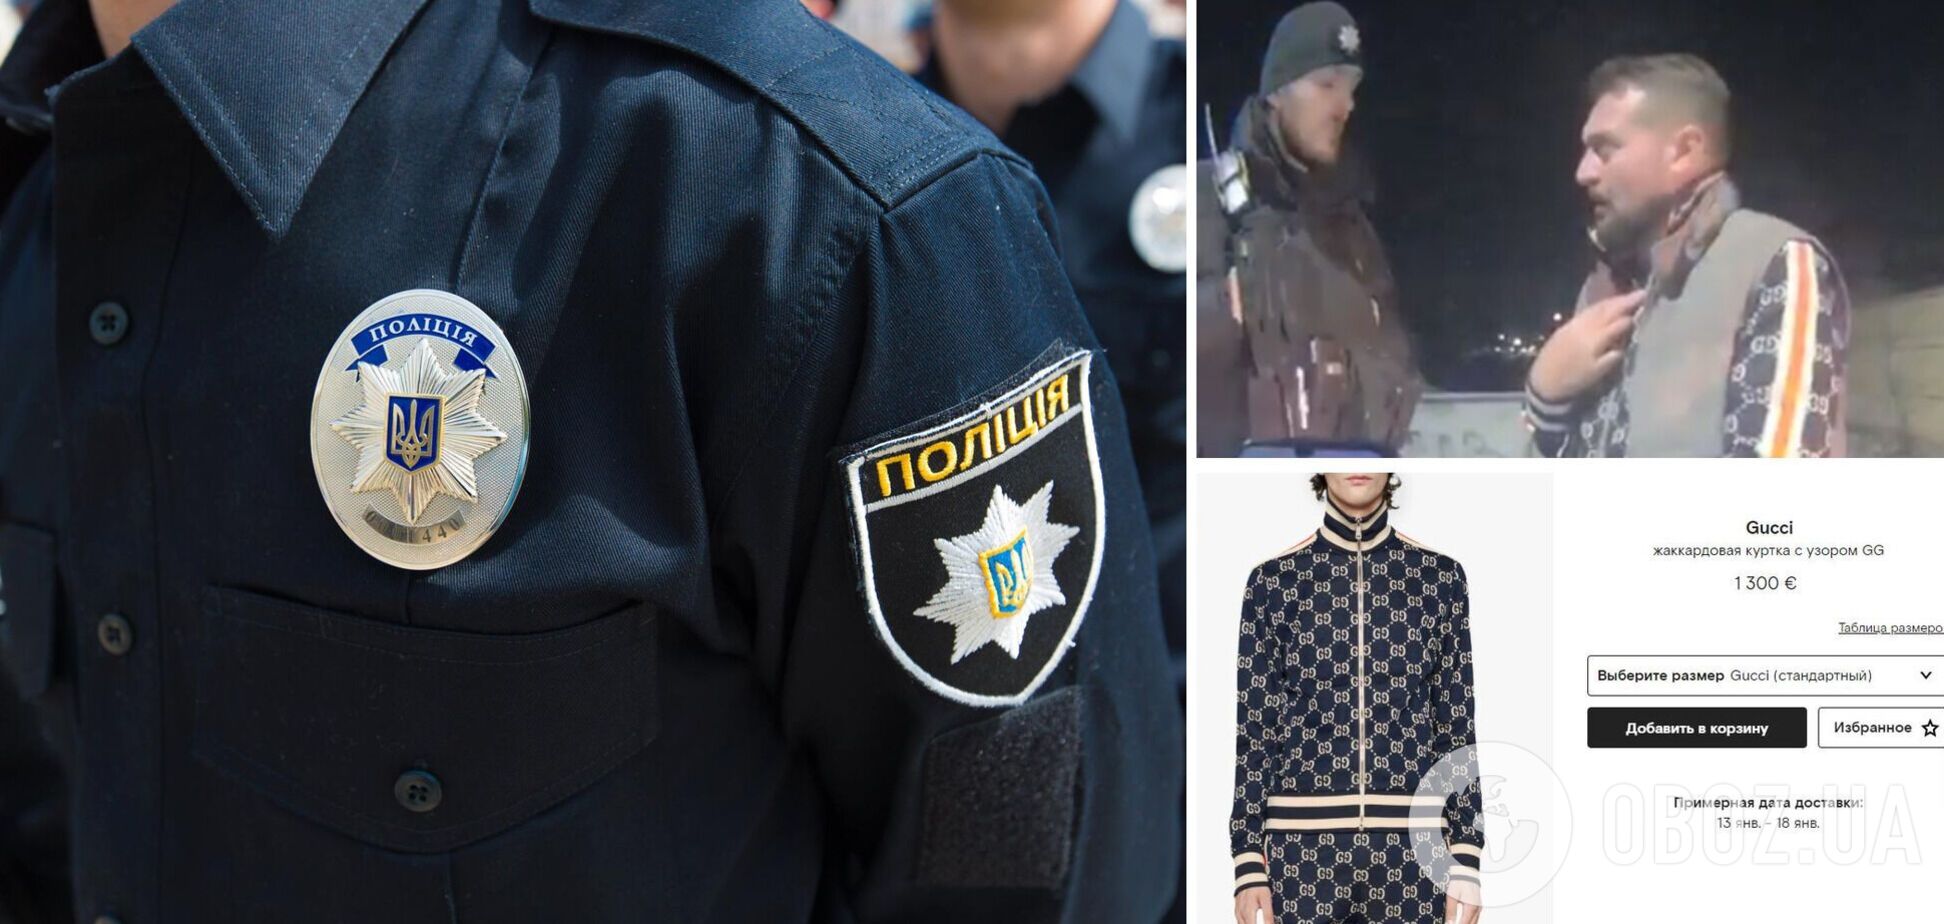 Пойманный пьяным за рулем одесский полицейский был одет в Gucci за €2 тысячи, – журналистка